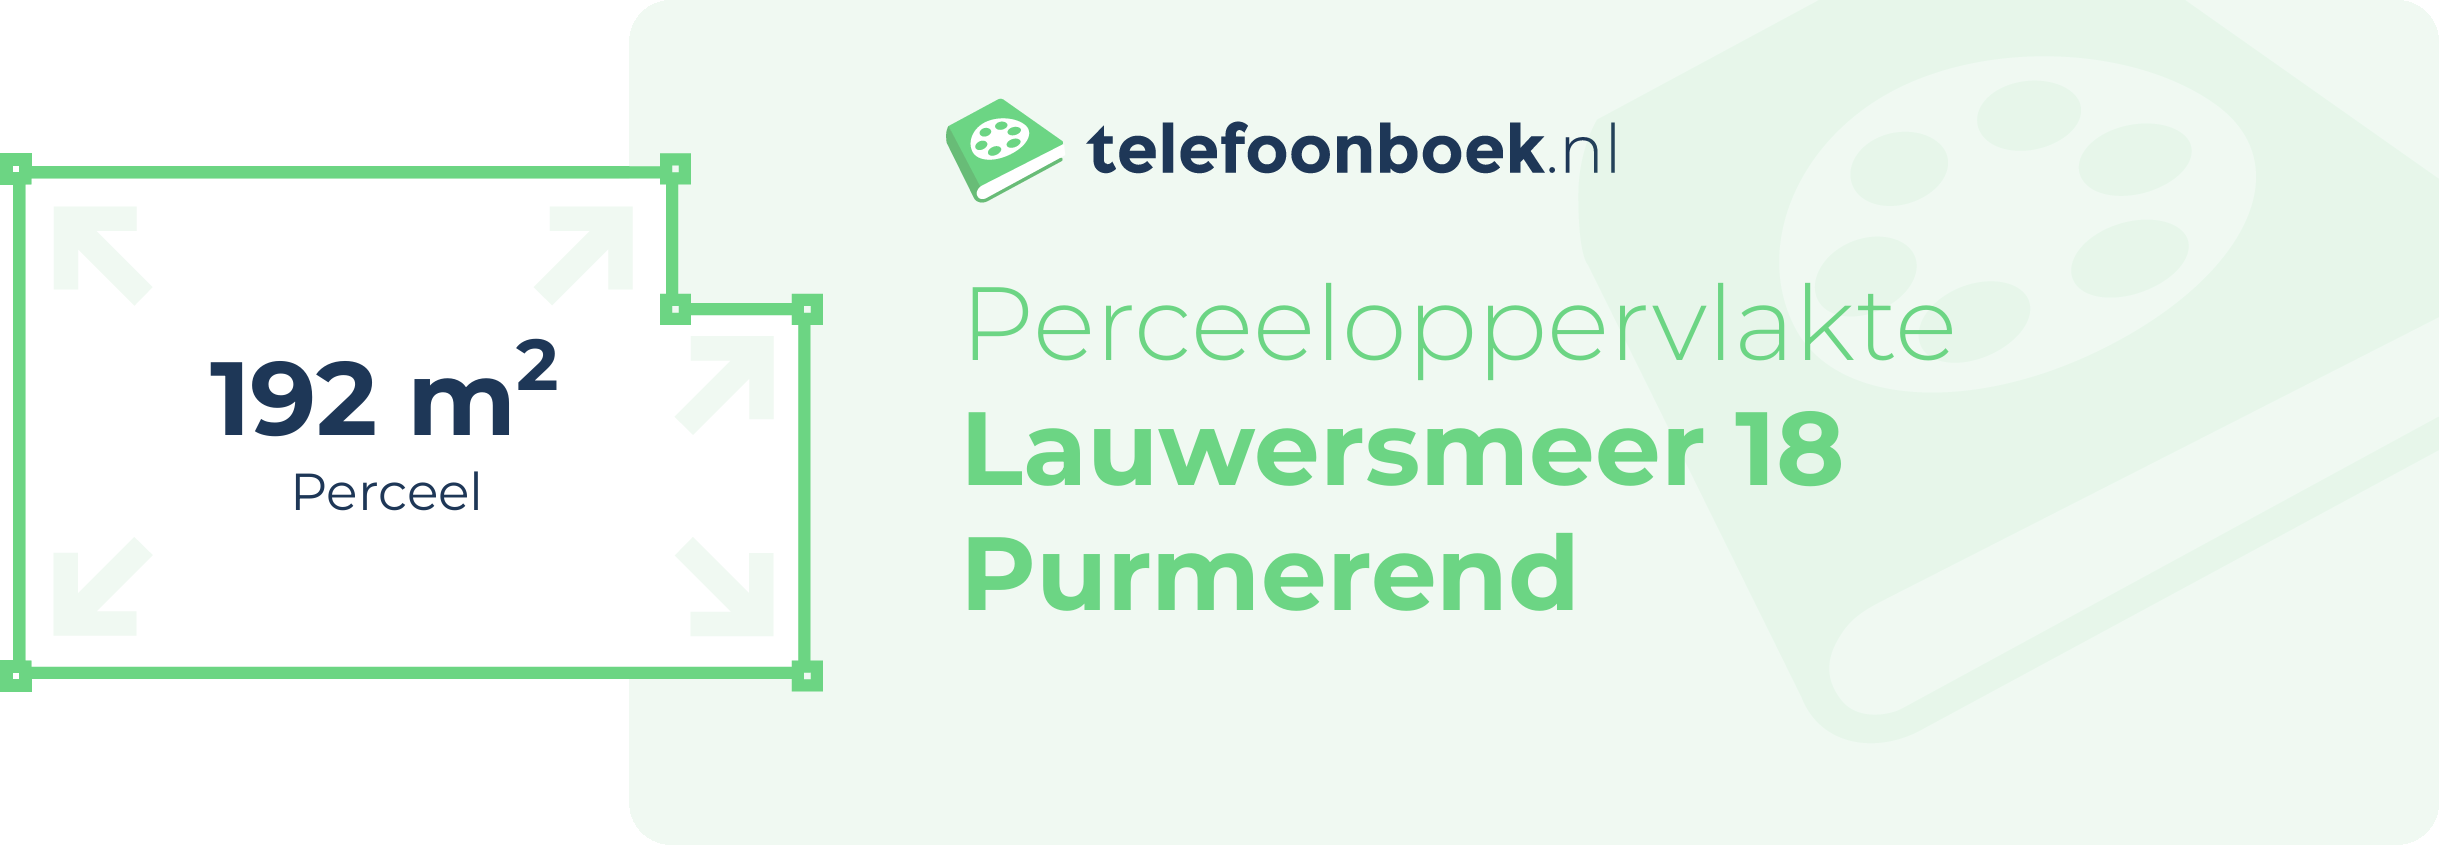 Perceeloppervlakte Lauwersmeer 18 Purmerend